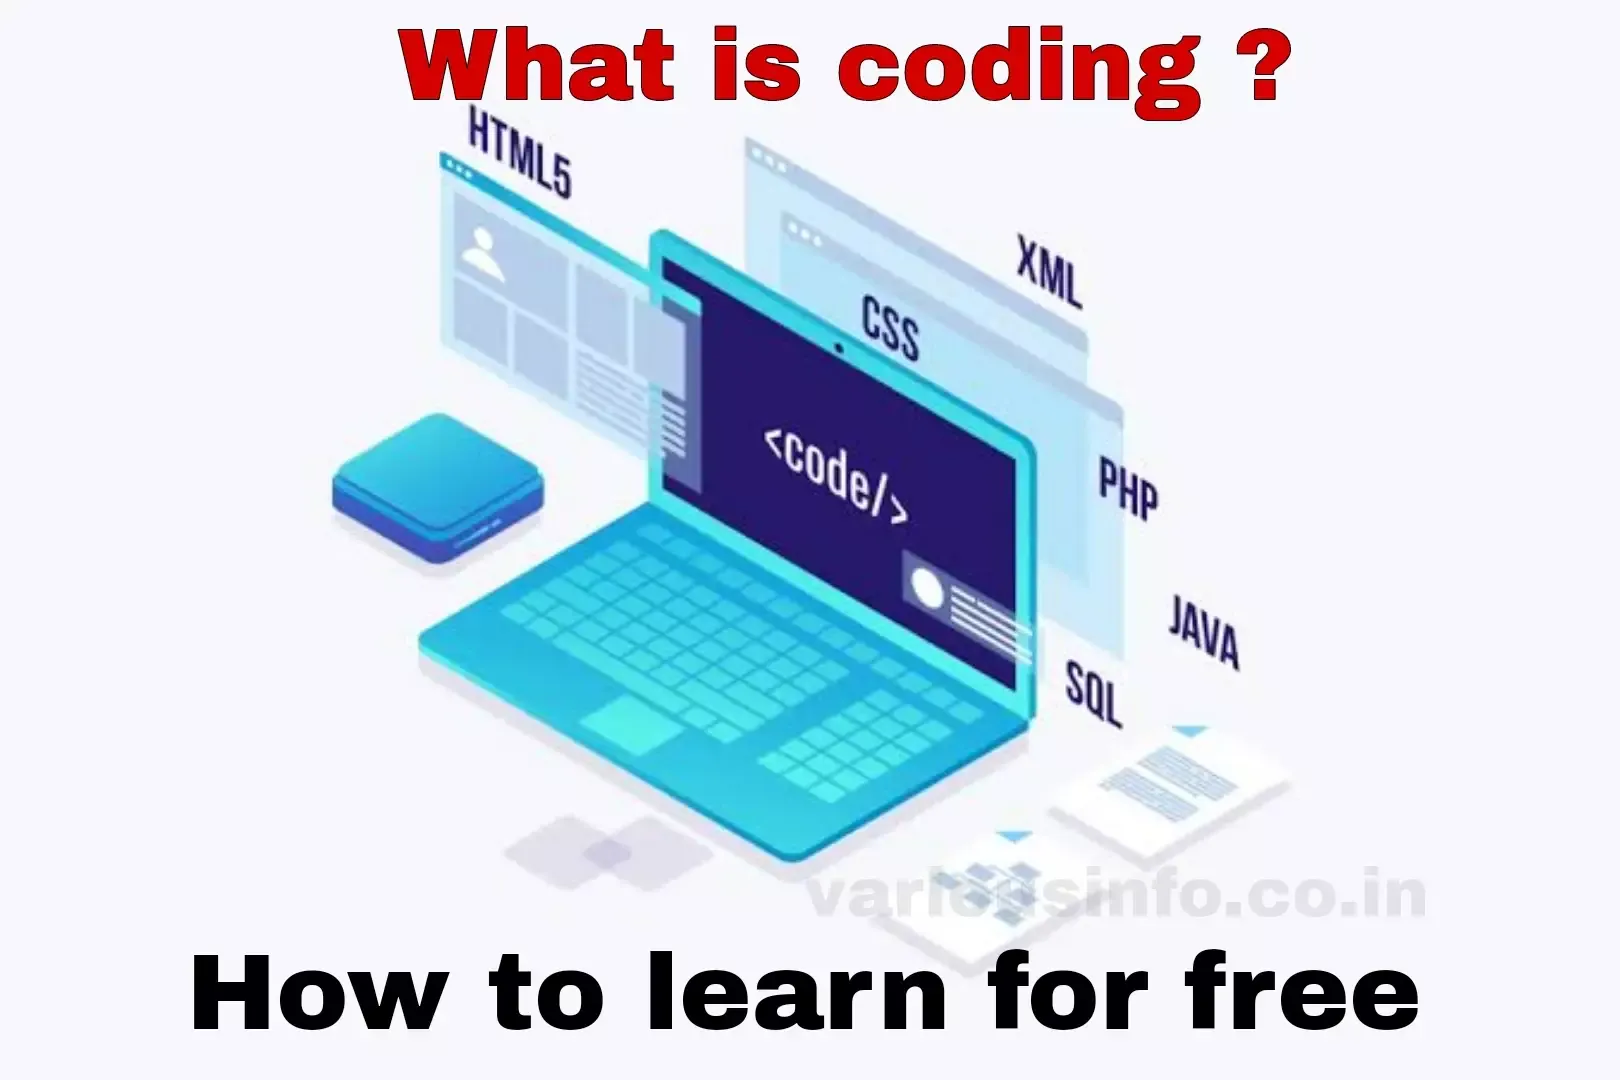 कोडिंग क्या है, प्रोग्राम क्या है, कोडिंग कैसे सीखते हैं, सी लैंग्वेज क्या है, जावा क्या है, सी प्लस प्लस क्या है, कोडिंग लैंग्वेज कैसे सीखे , c++ क्या है?